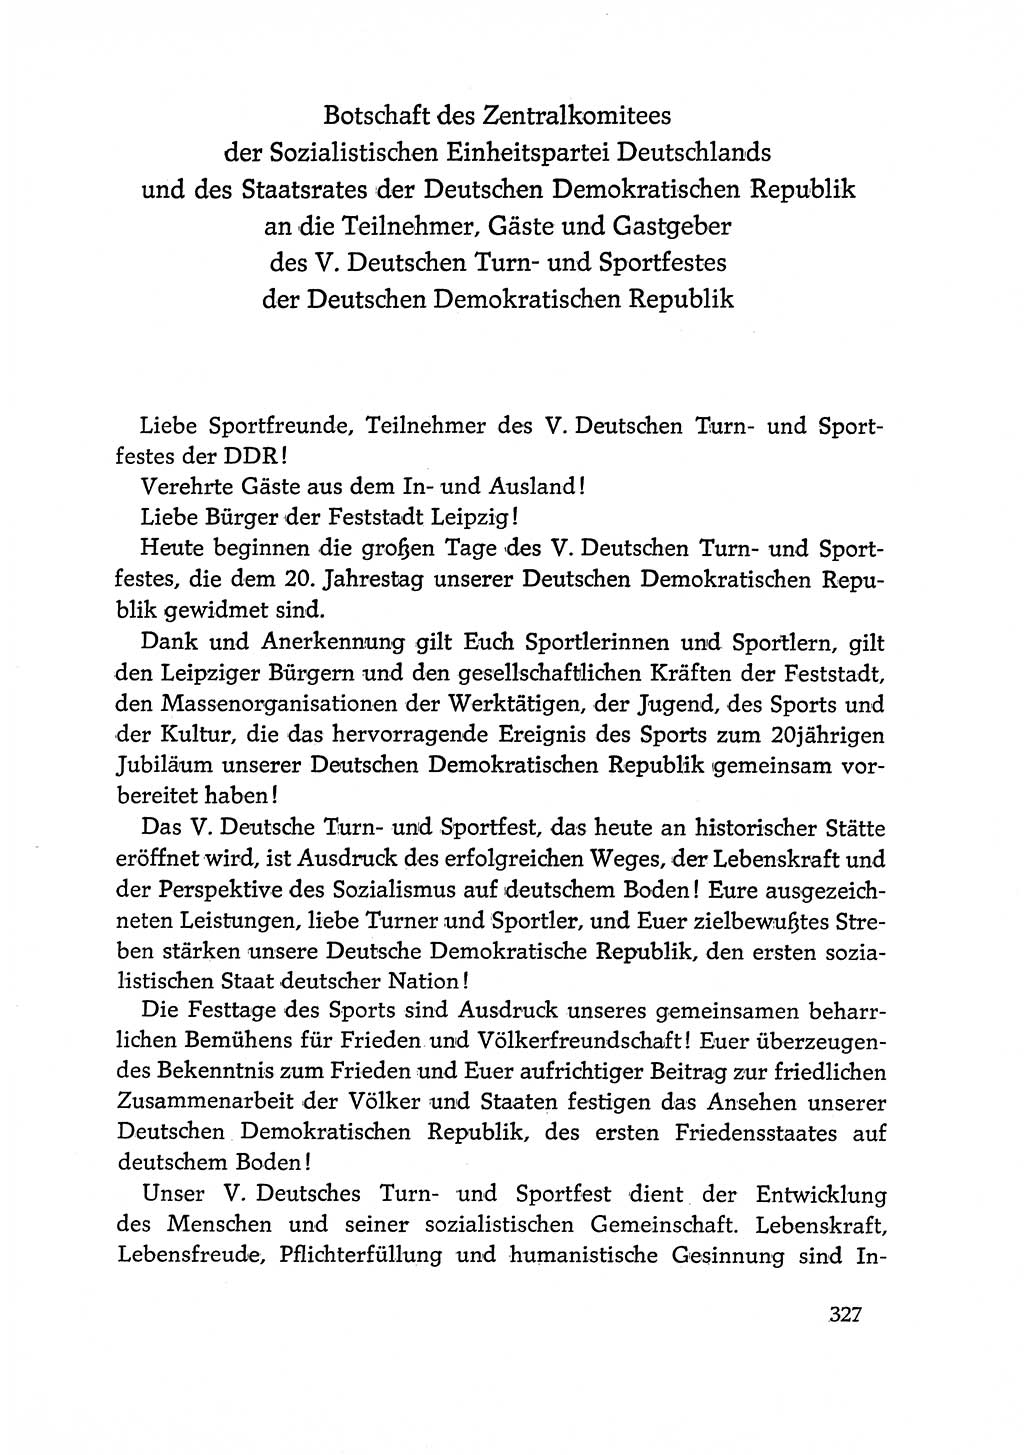 Dokumente der Sozialistischen Einheitspartei Deutschlands (SED) [Deutsche Demokratische Republik (DDR)] 1968-1969, Seite 327 (Dok. SED DDR 1968-1969, S. 327)